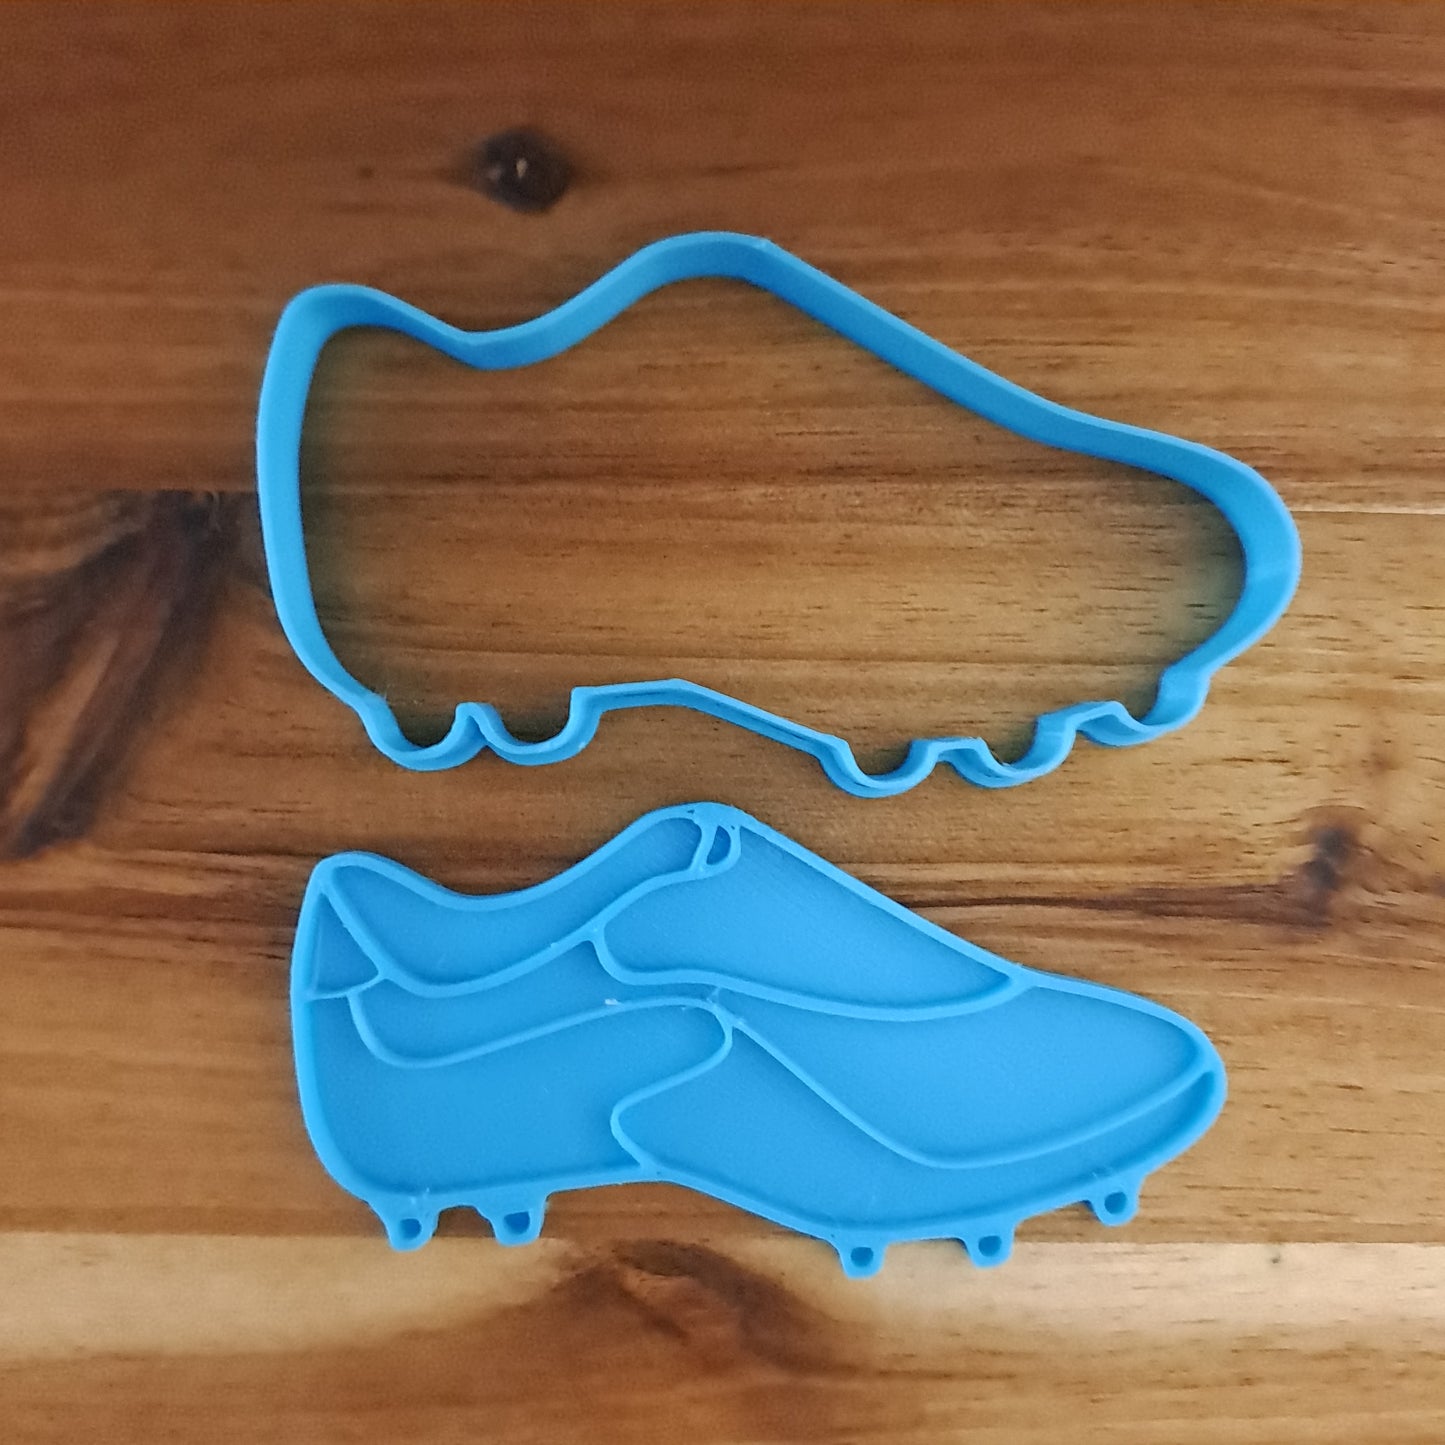 Scarpe da calcio - scarpetta Sport - Cookies cutter - Formina